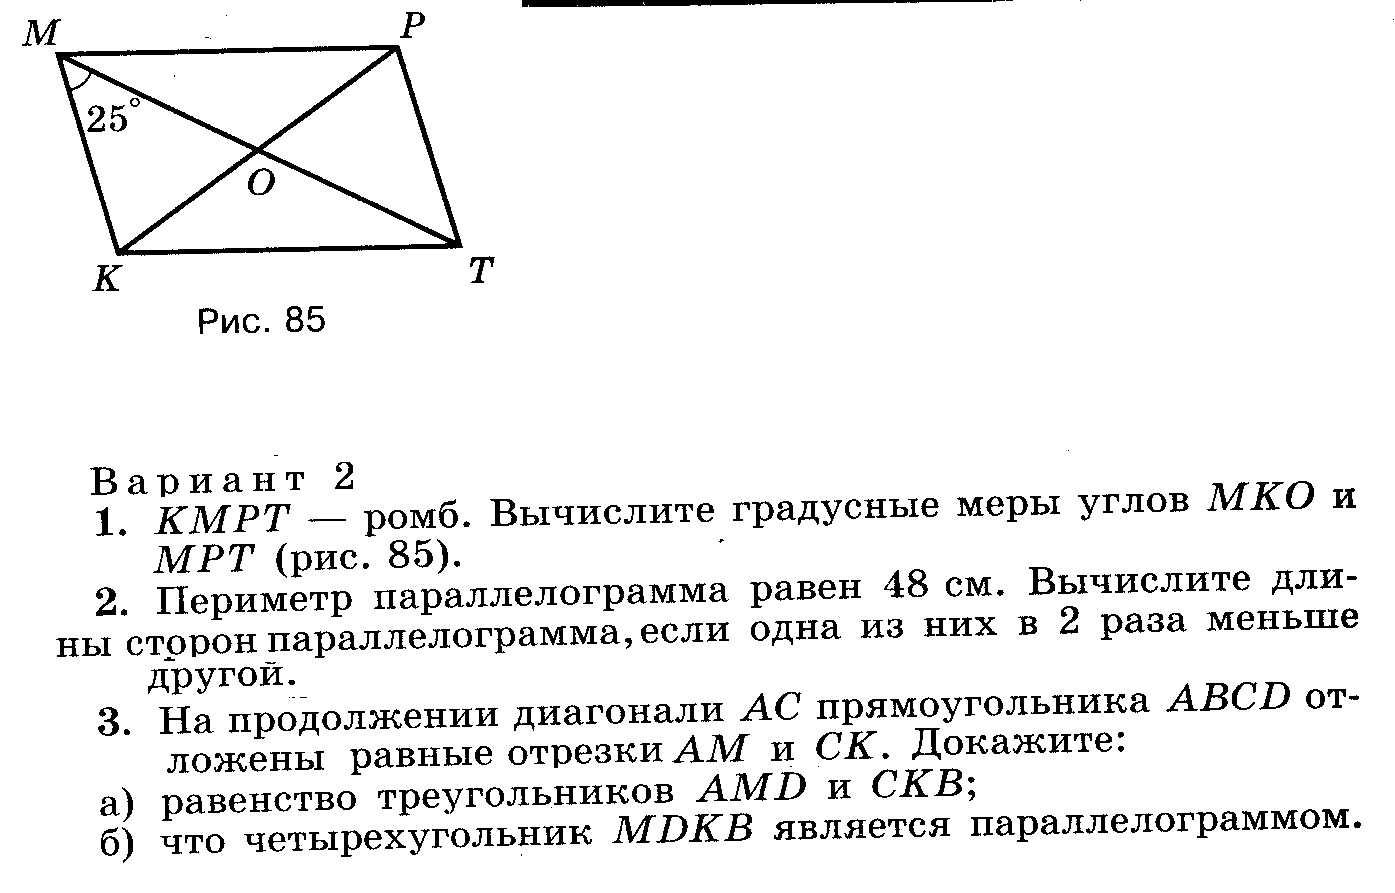 Рабочая программа Геометрия 7-9классы к учебнику А.В. Погорелова ФГОС